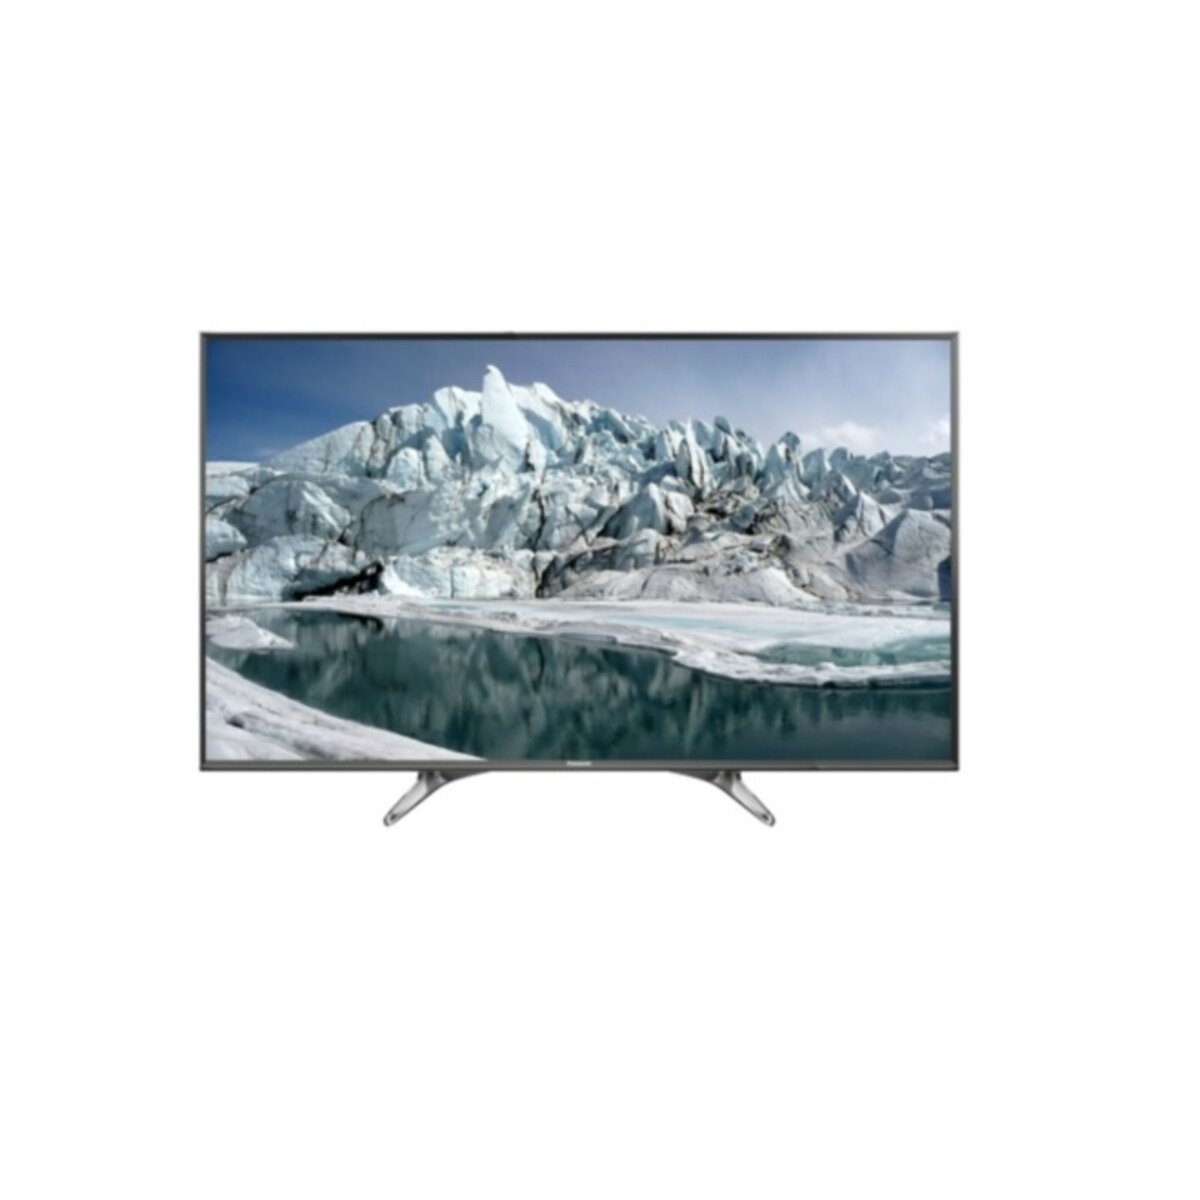 PANASONIC TX-65EX600E TVLED Ultra HD 4K 164 cm Smart TV